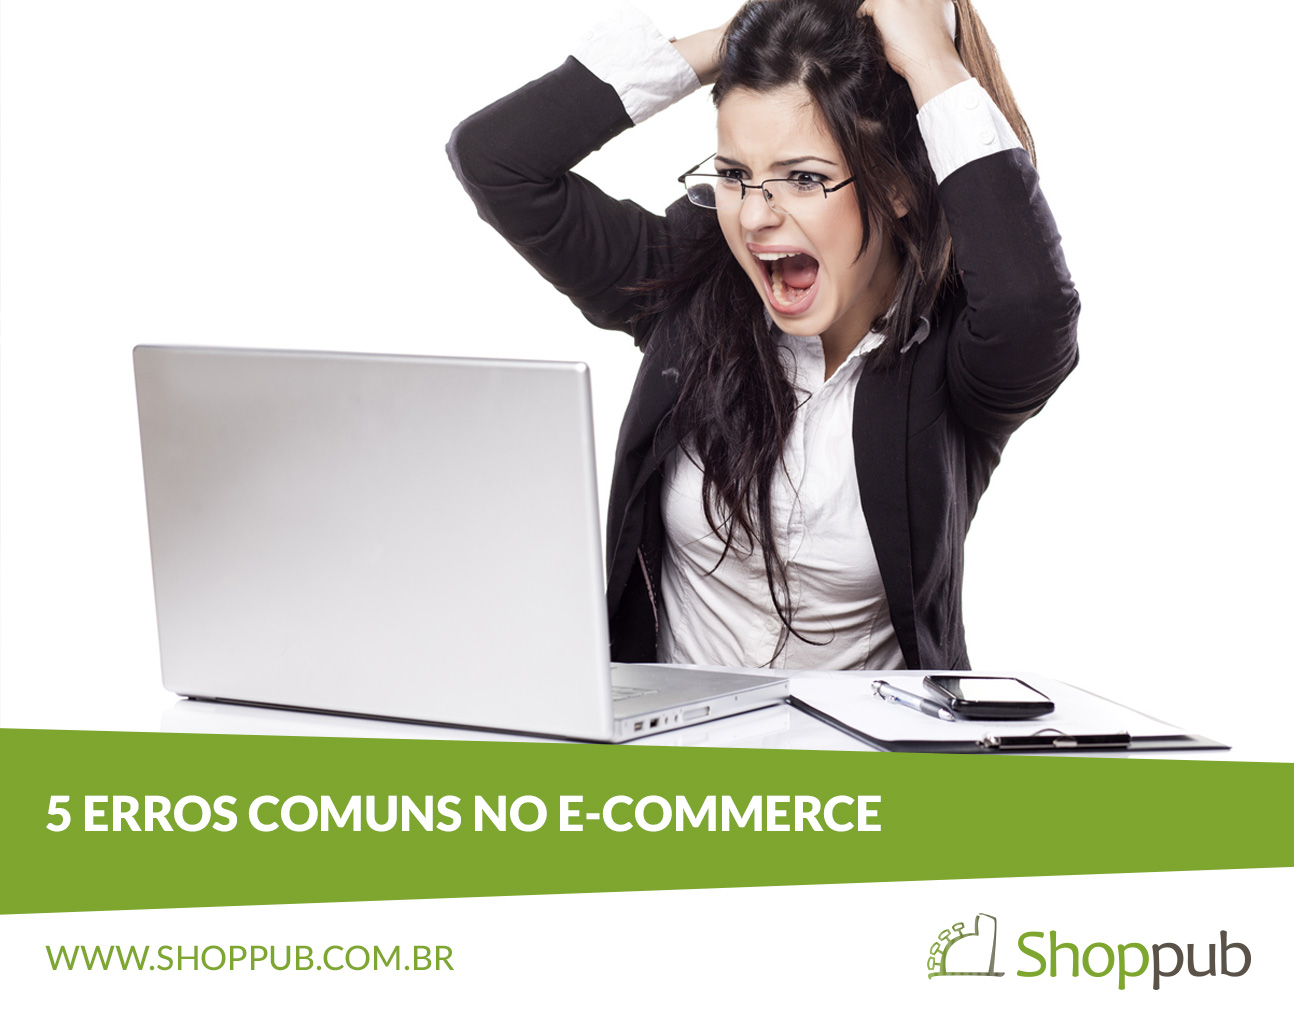 5 Erros comuns no e-commerce